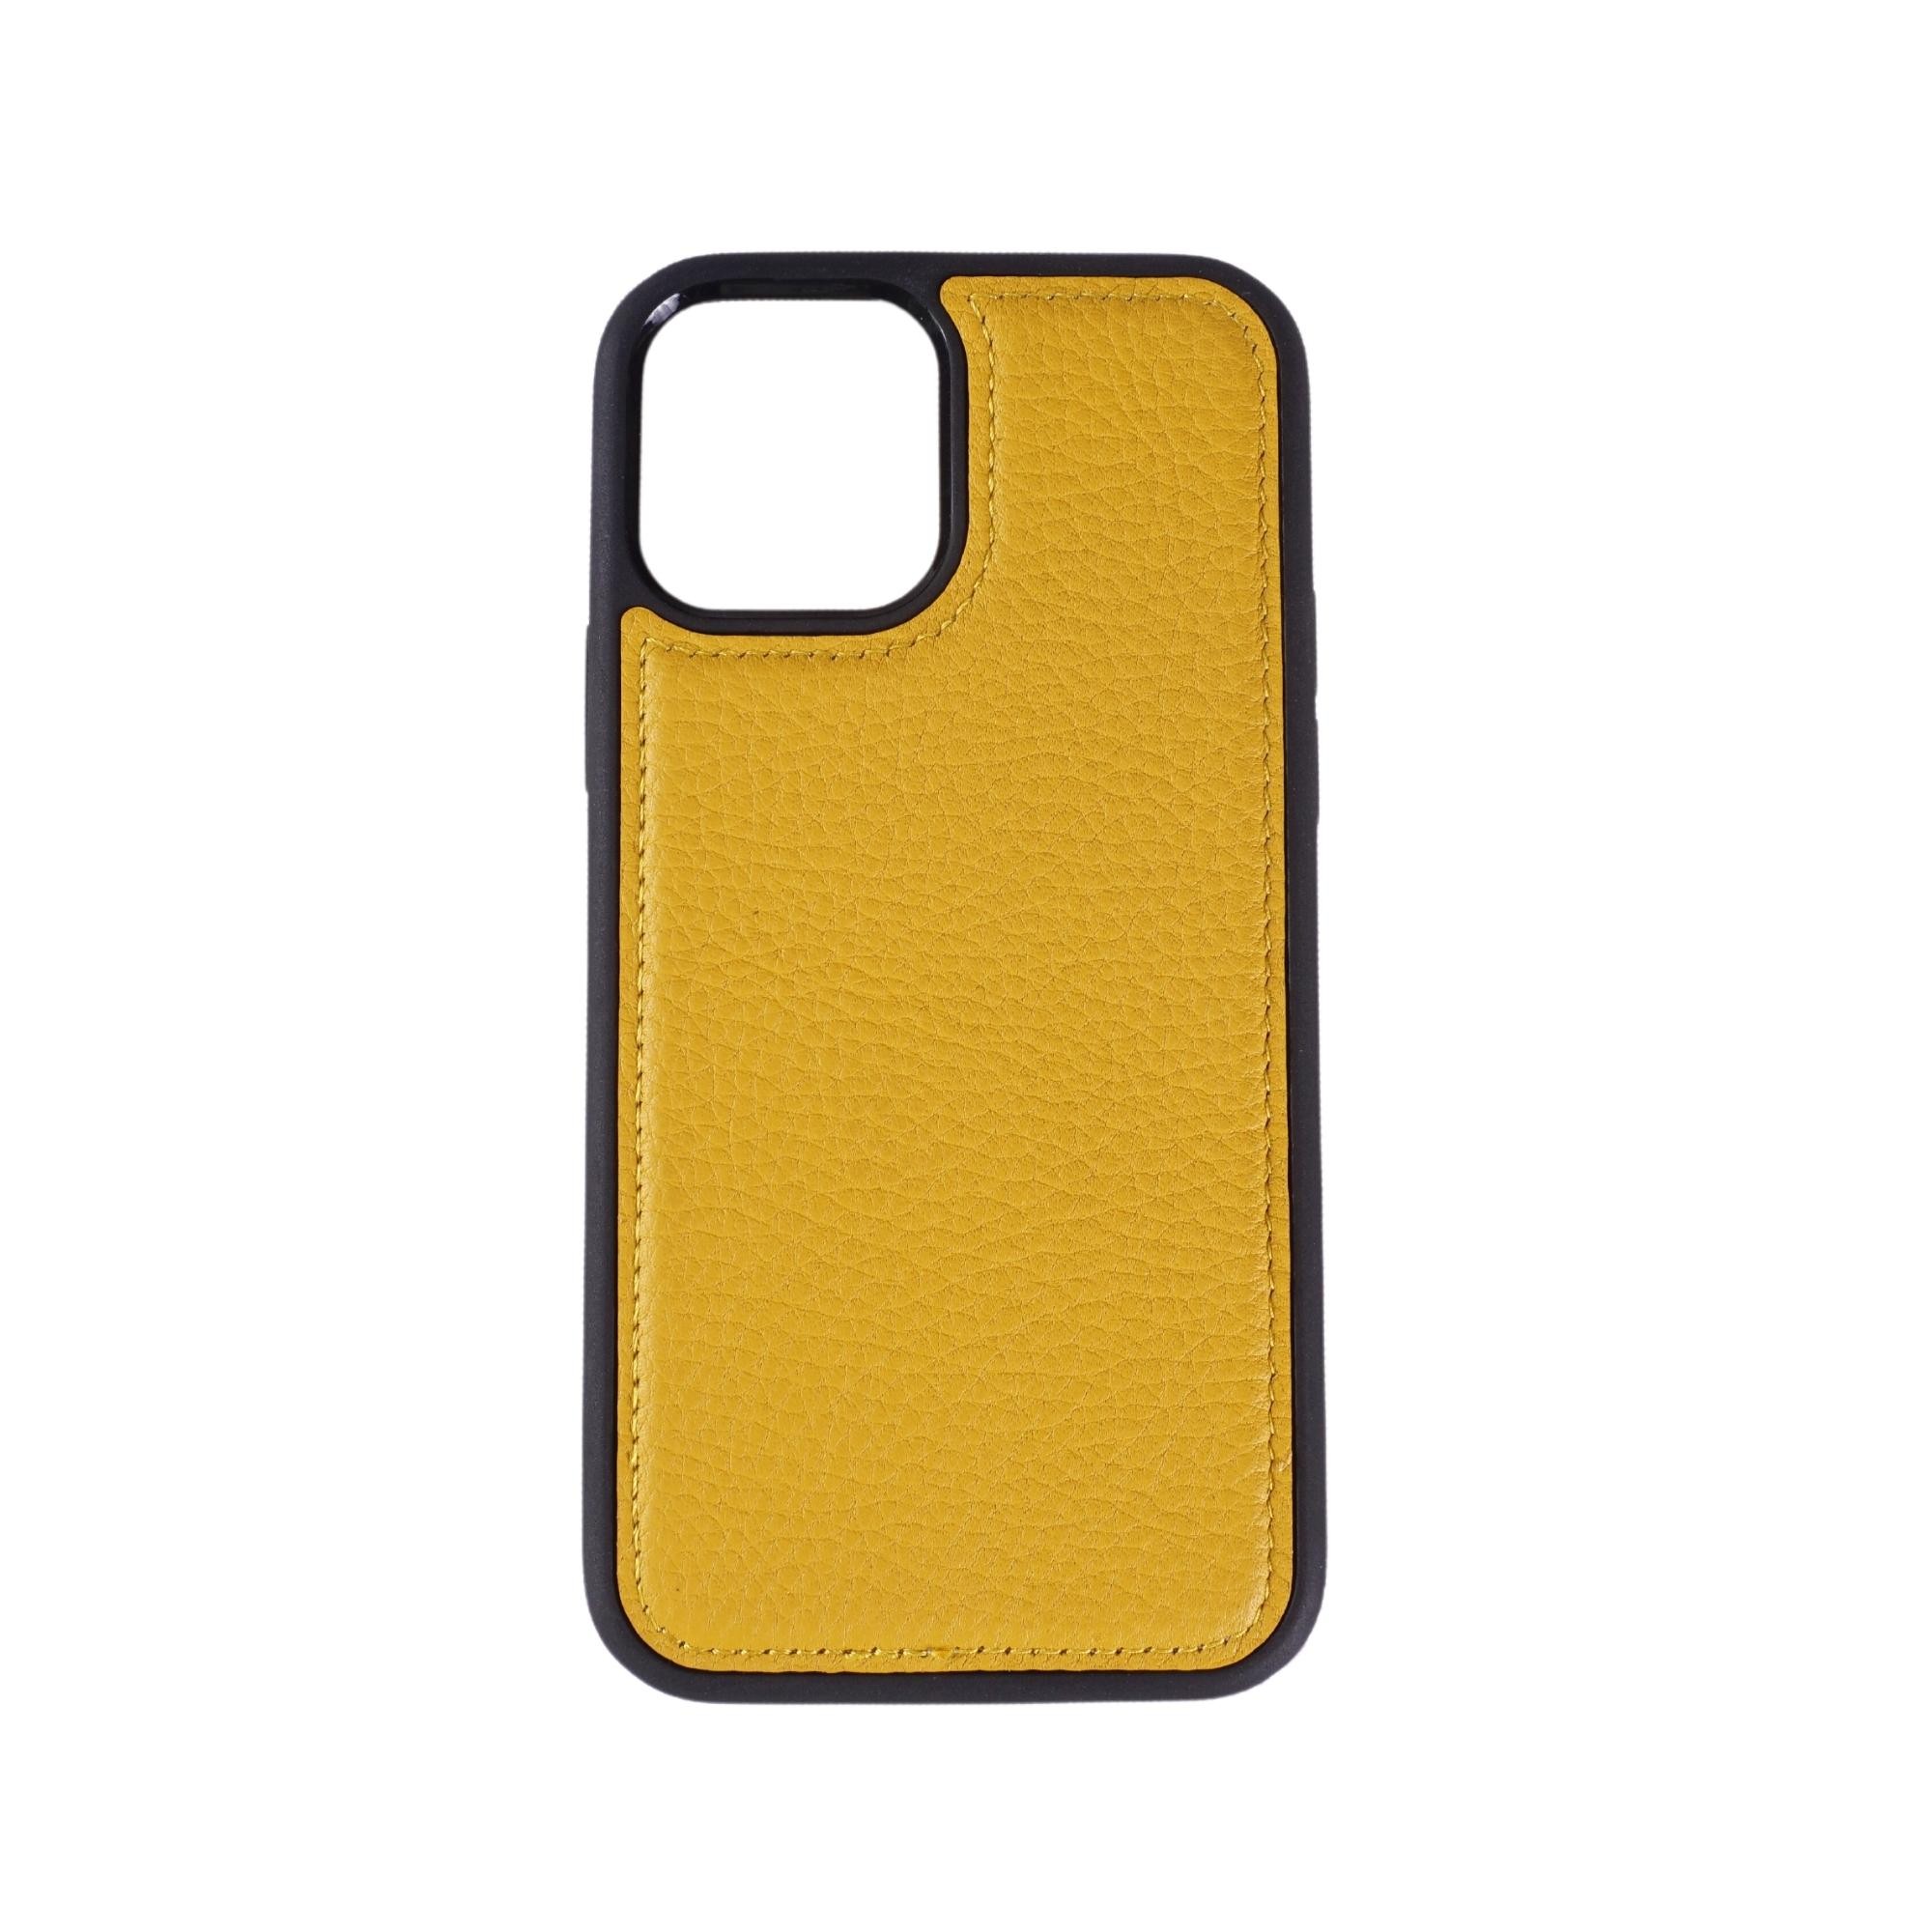 Sınırsız Koruma, Sınırsız Şıklık: iPhone'unuz İçin Lüks Deri Kılıf Koleksiyonu - Floatr Sarı